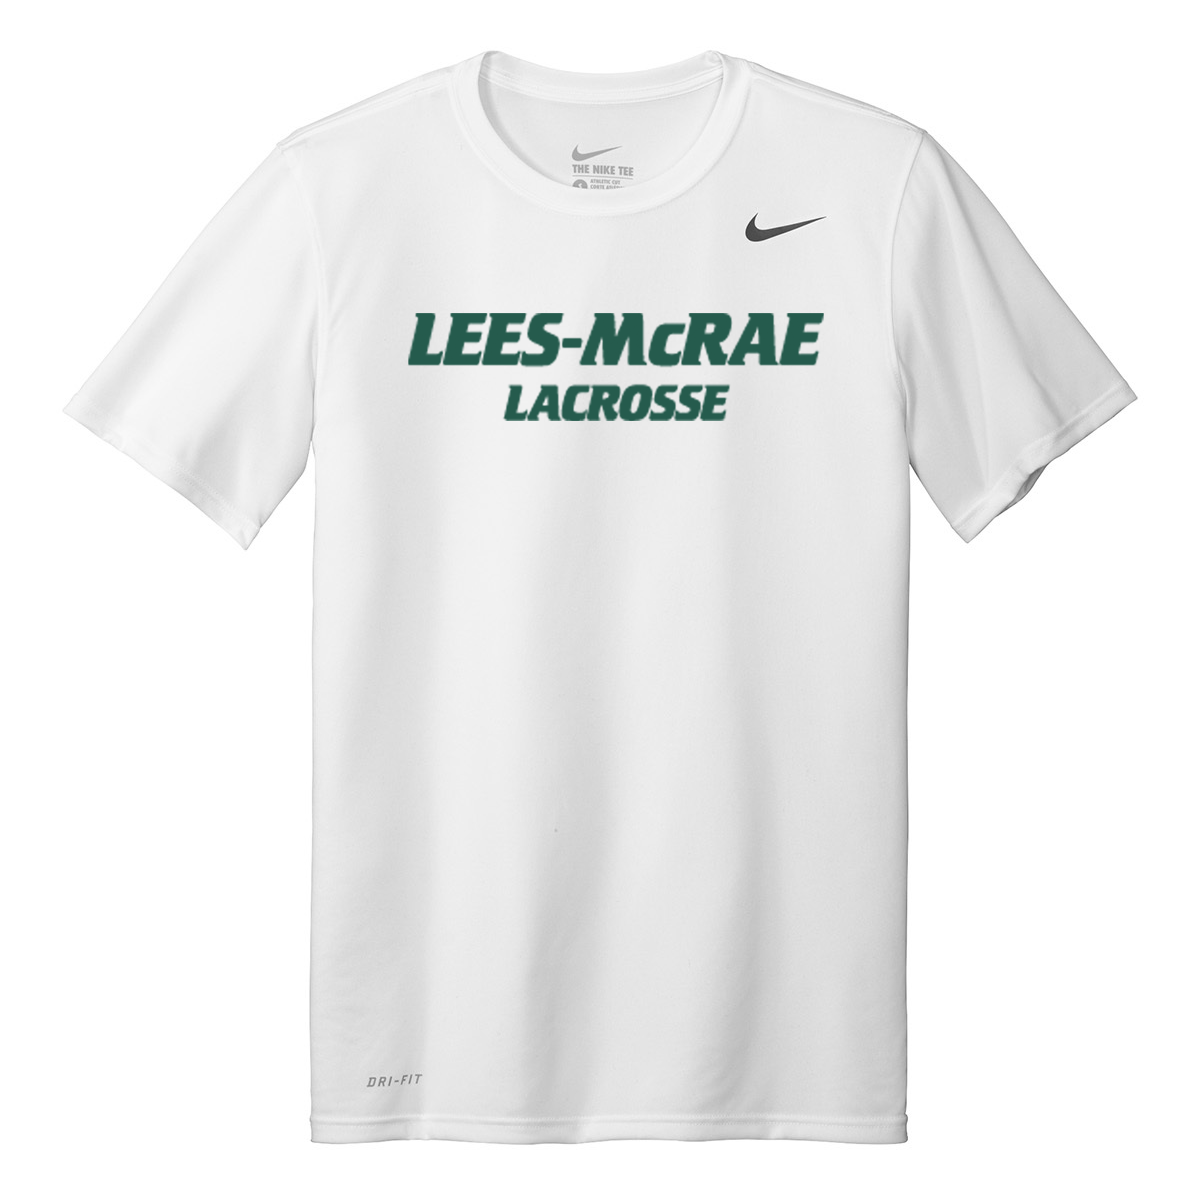 LMC Men's Lacrosse Nike Legend Tee